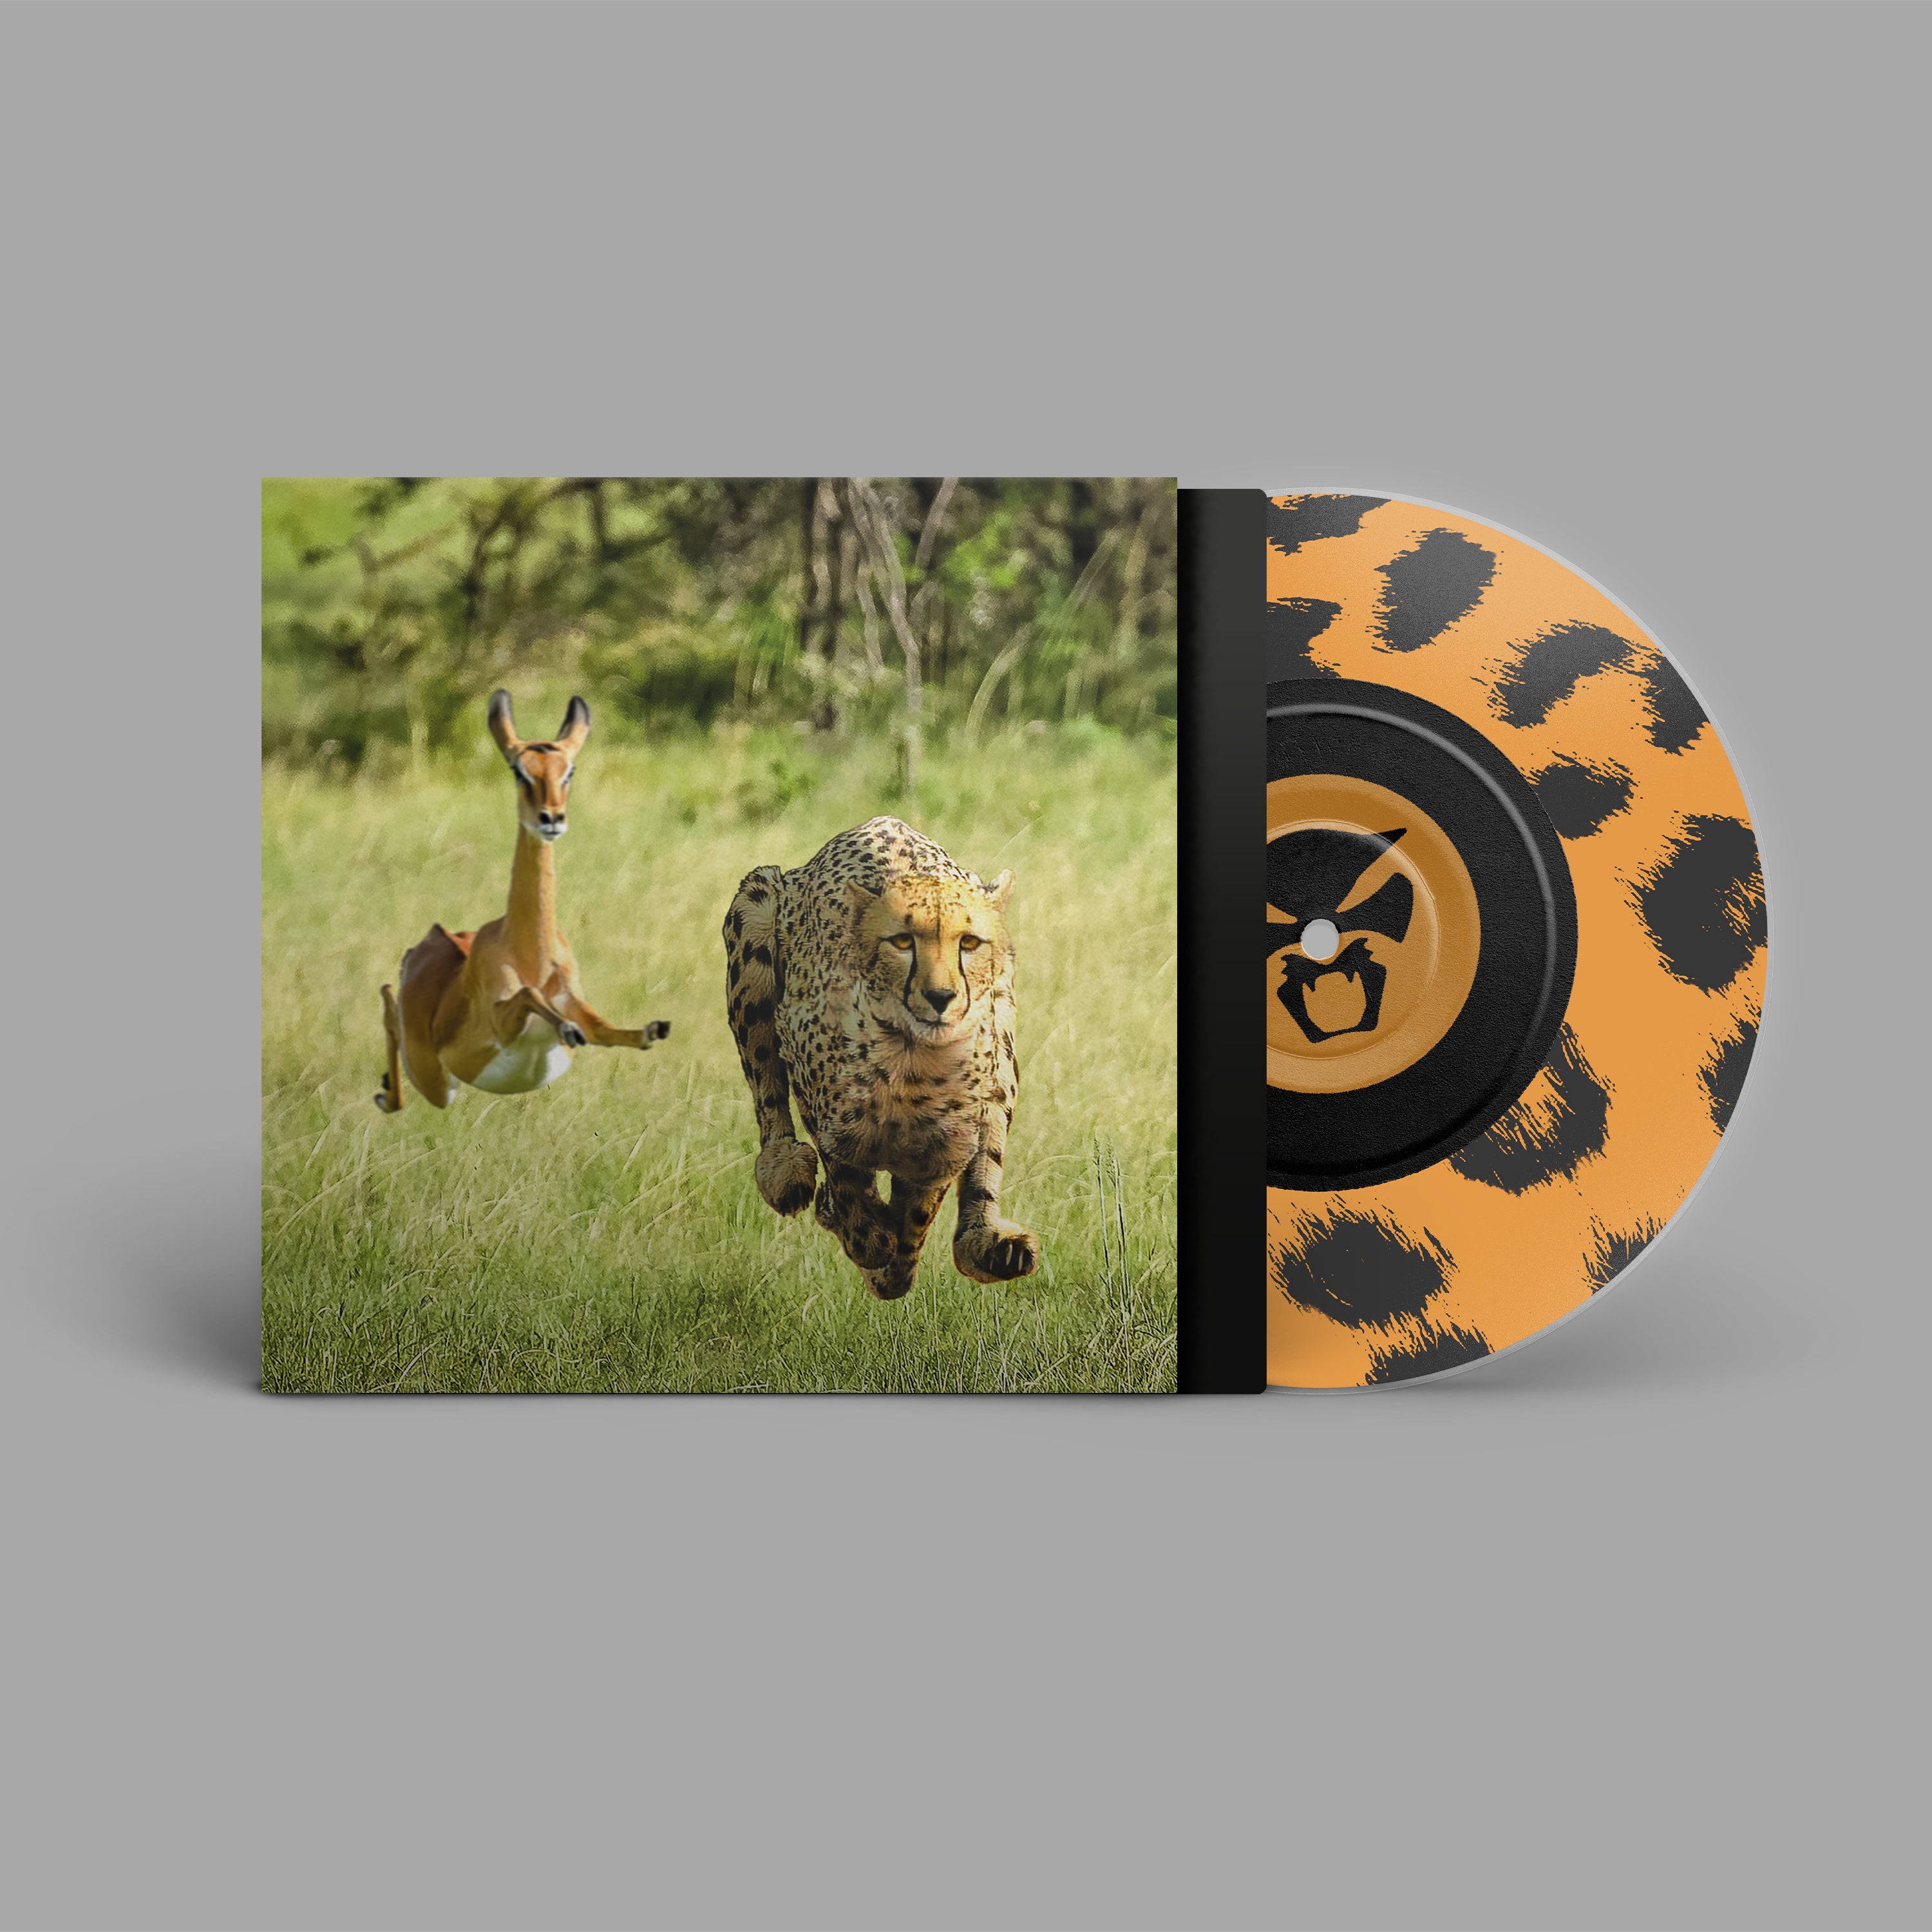 Thundercat, Tame Impala - No More Lies: Limited Edition Cheetah Screenprint 7" Single